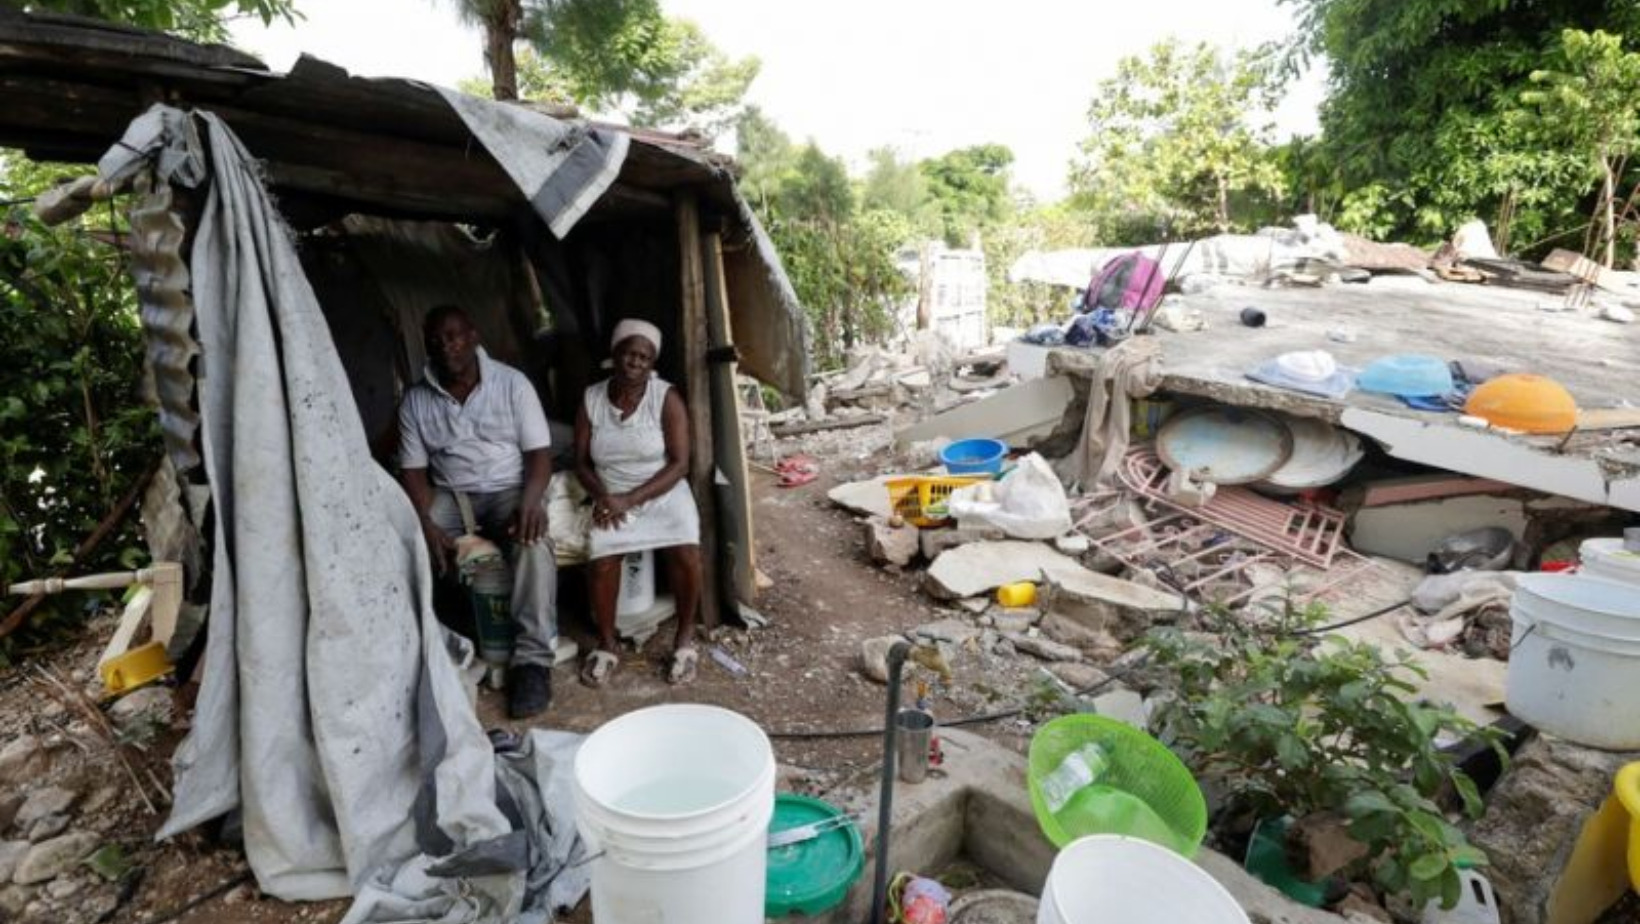 Haitianos vulnerables ante ola de violencia entre bandas armadas. Foto: Fuente xetrna